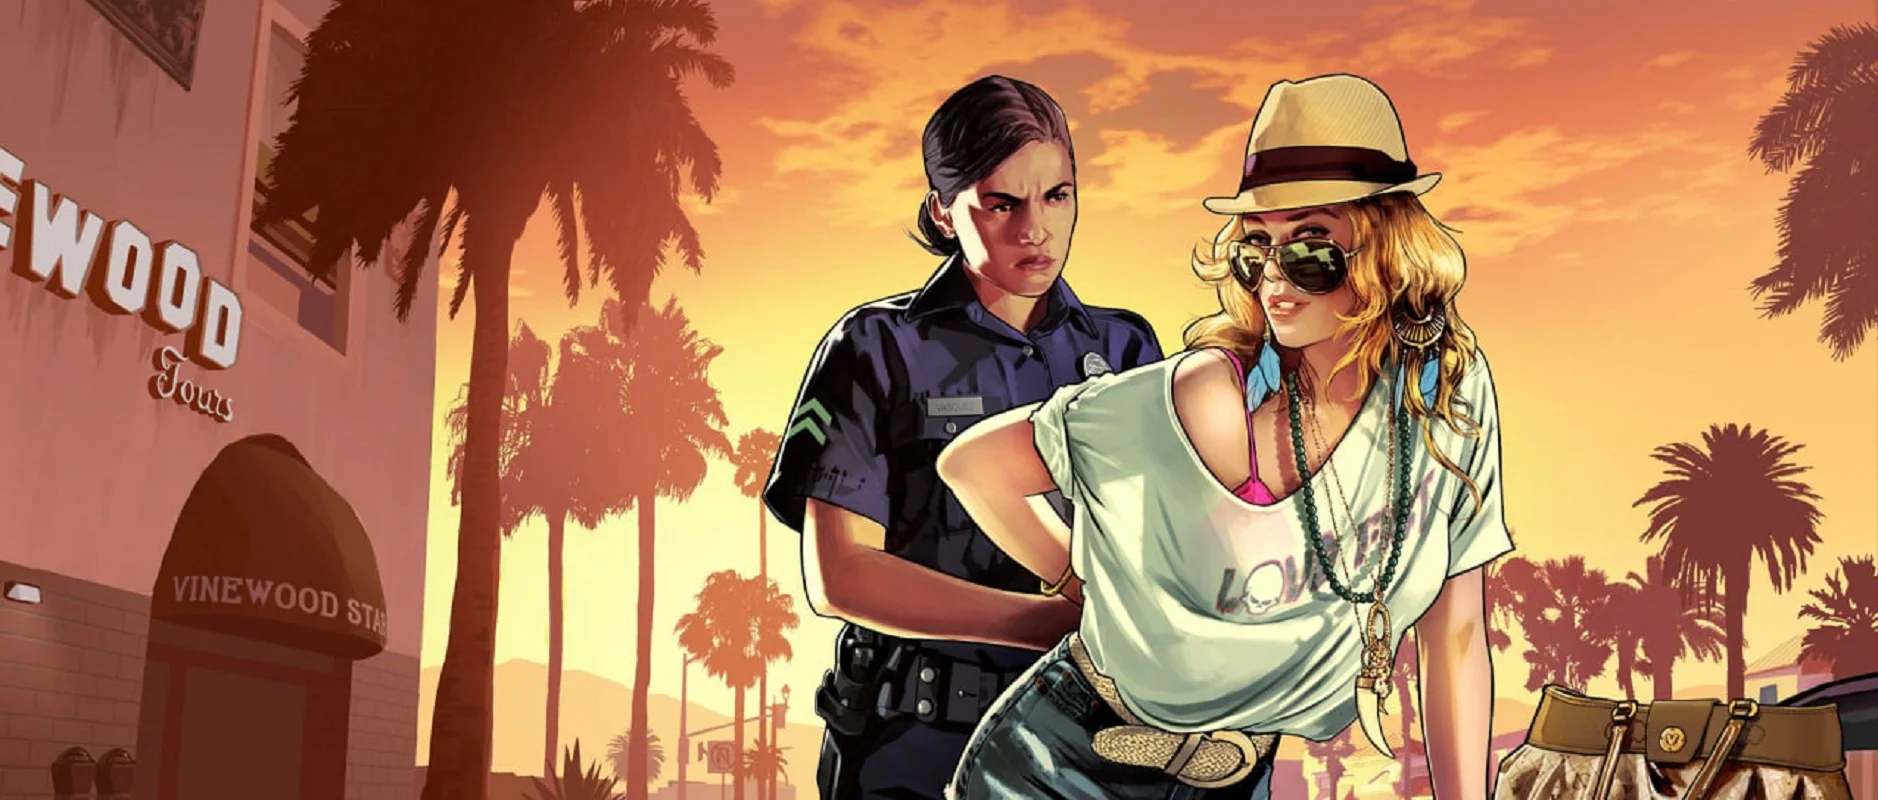 Omslag: kunst uit Grand Theft Auto V